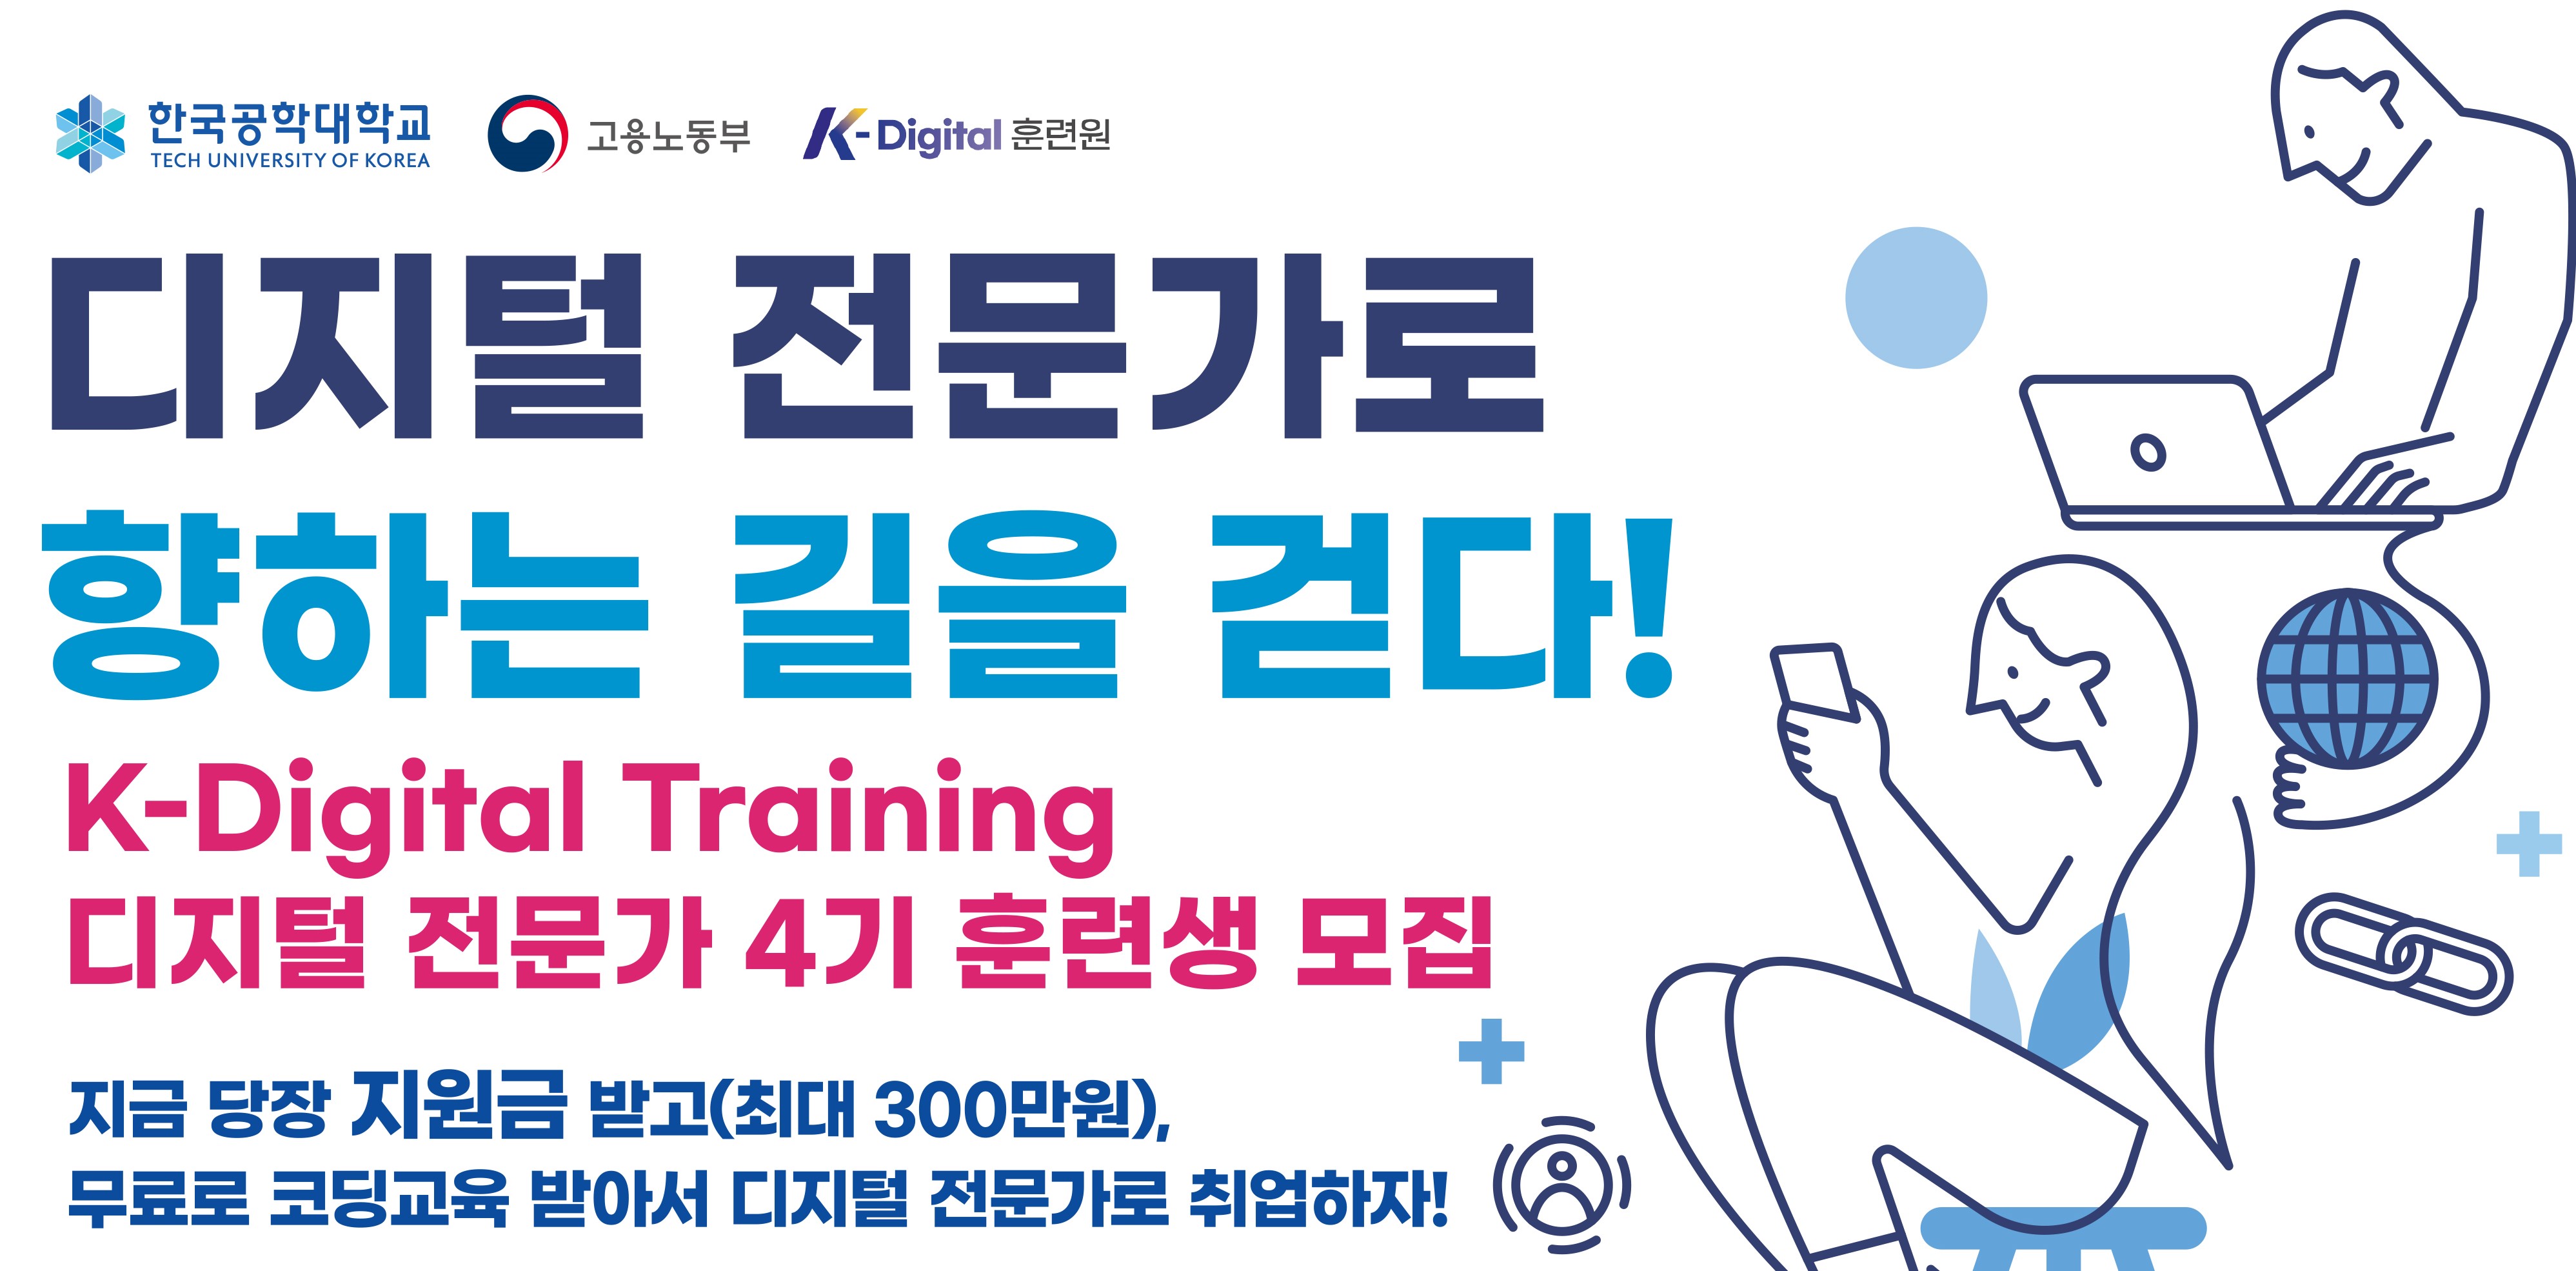 한국공학대학교, 고용노동부, K-Digital 훈련원, 디지털 전문가로 향하는 길을 걷다! K-Digital Training 디지털 전문가 4기 훈련생 모집, 지금 당장 지원금 받고(최대 300만원), 무료로 코딩교육 받아서 디지털 전문가로 취업하자!